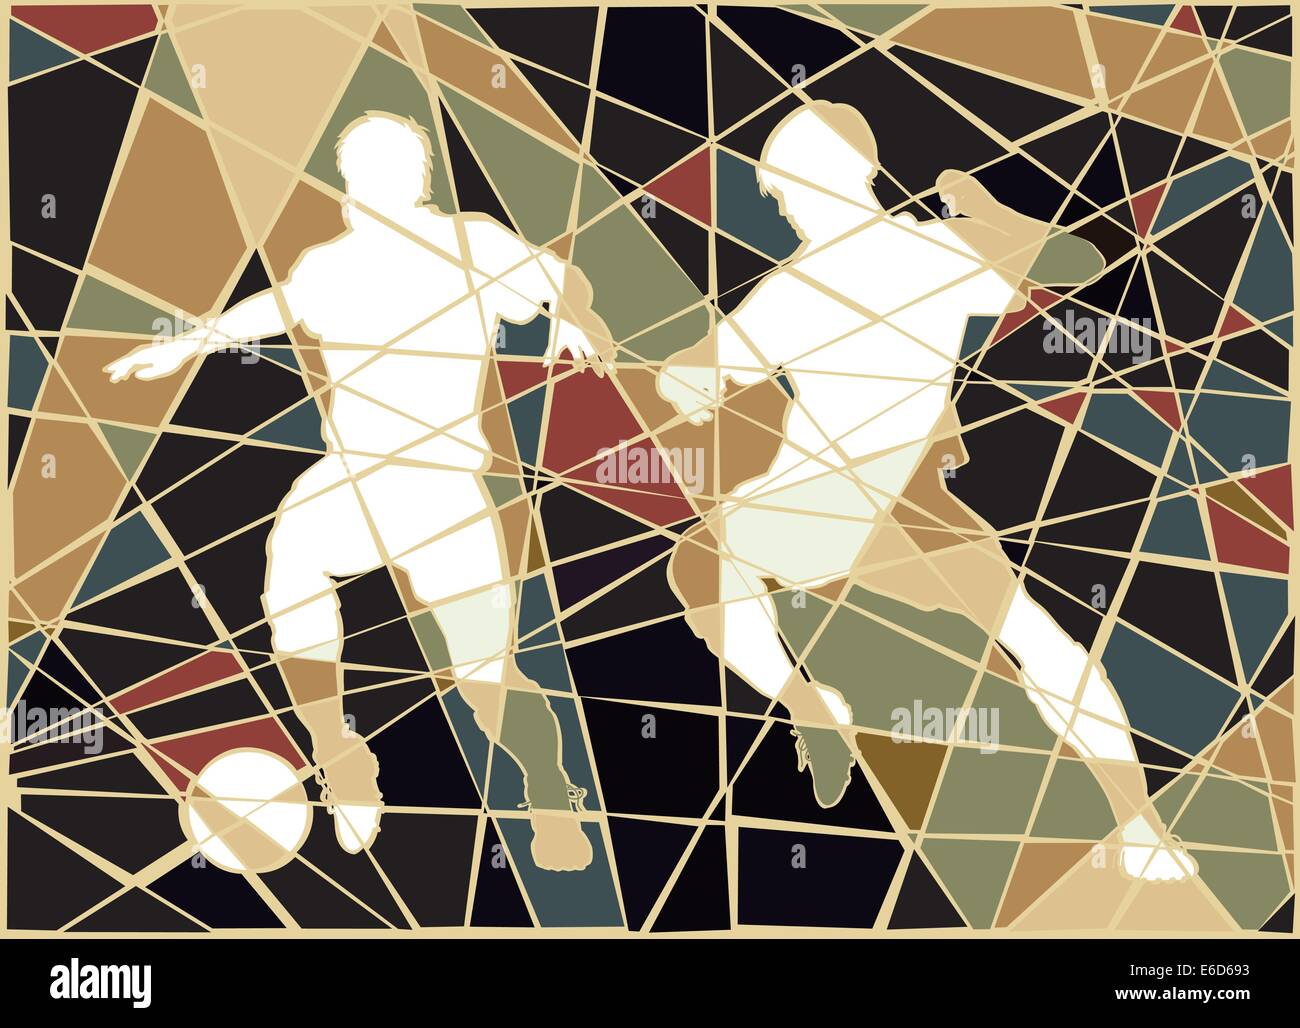 Vector illustration modifiable mosaïque colorée de deux hommes jouant au football Illustration de Vecteur